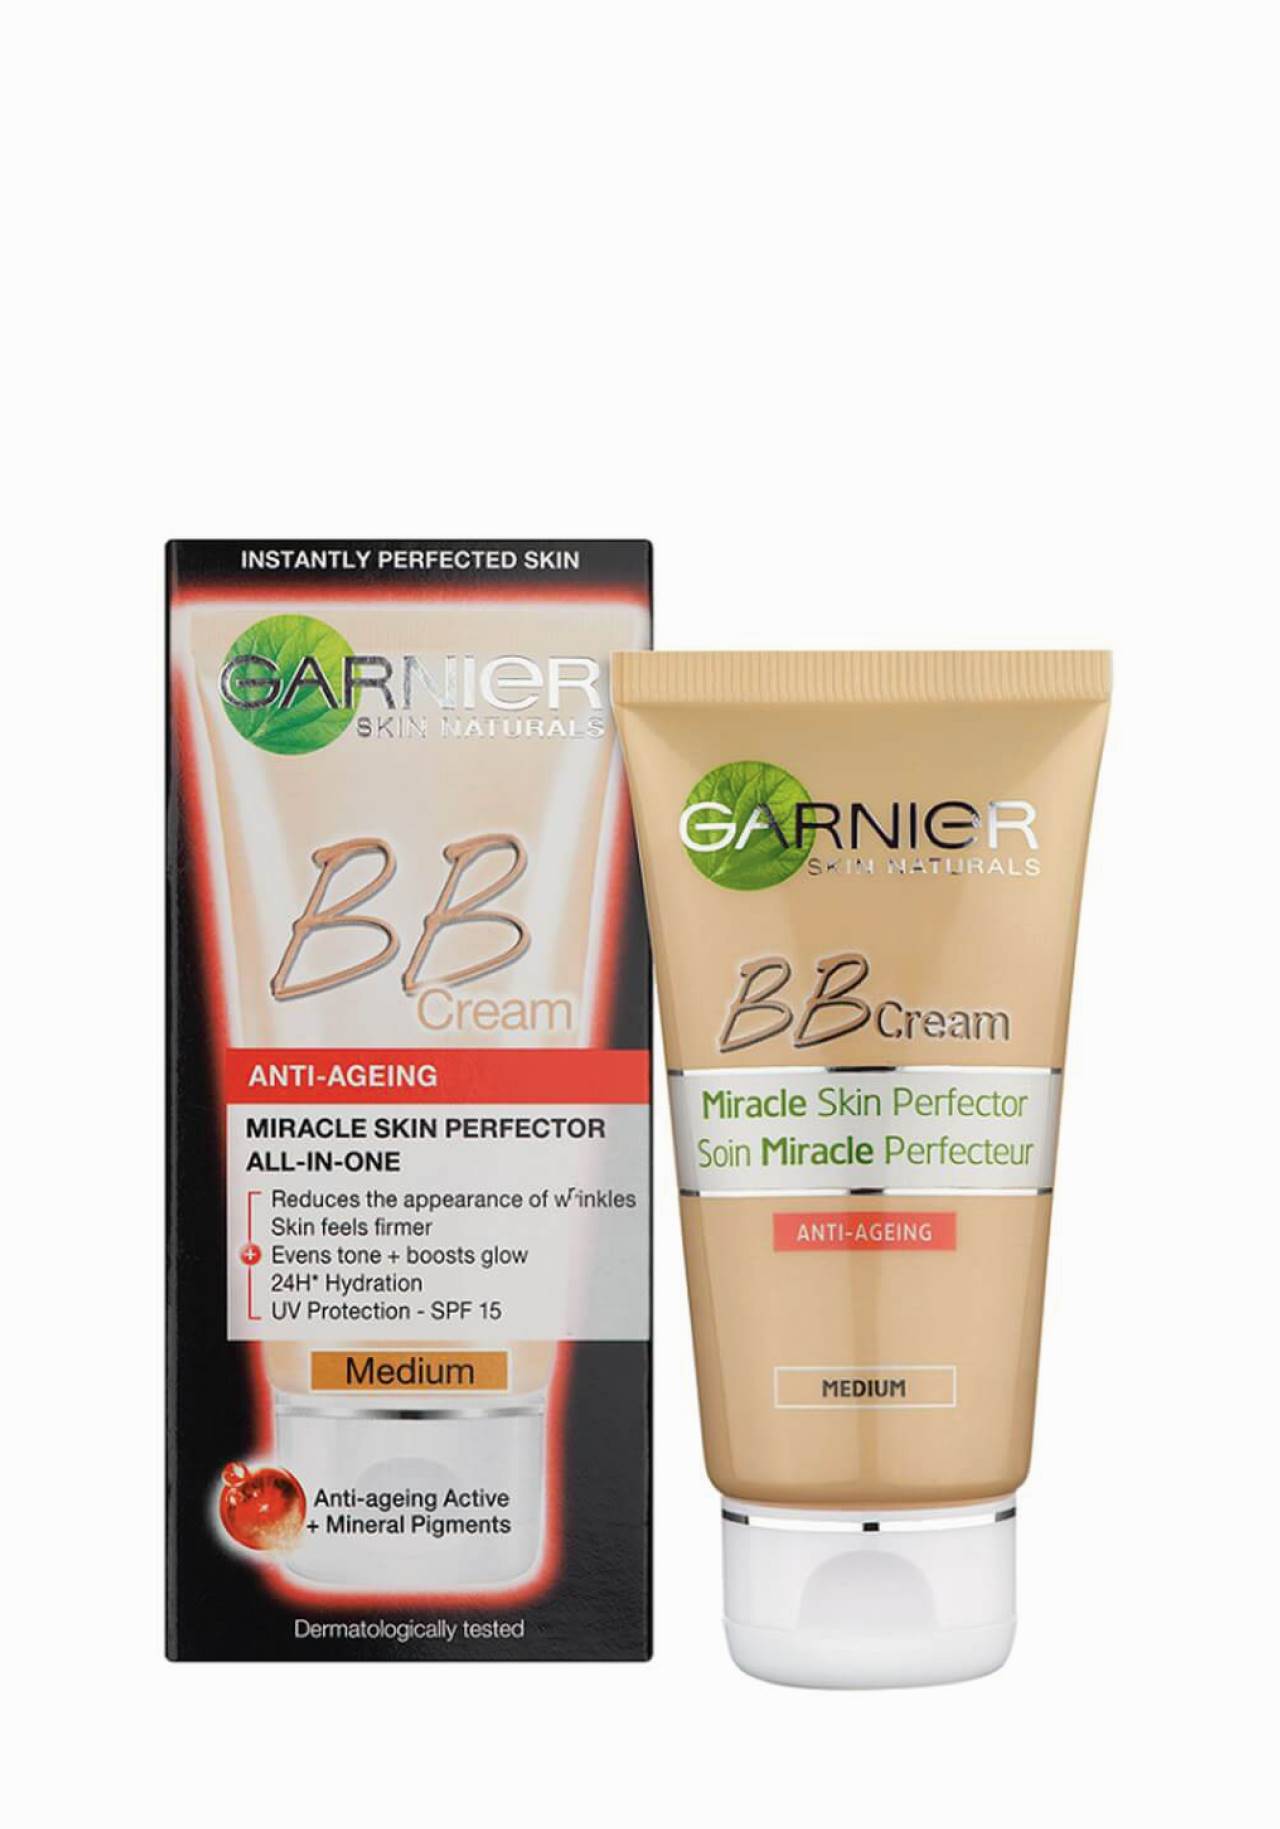 BB Cream Anti-Edad Miracle Skin Perfector de Garnier Aquí tienes la crema que estás buscando para un efecto buena cara inmediato